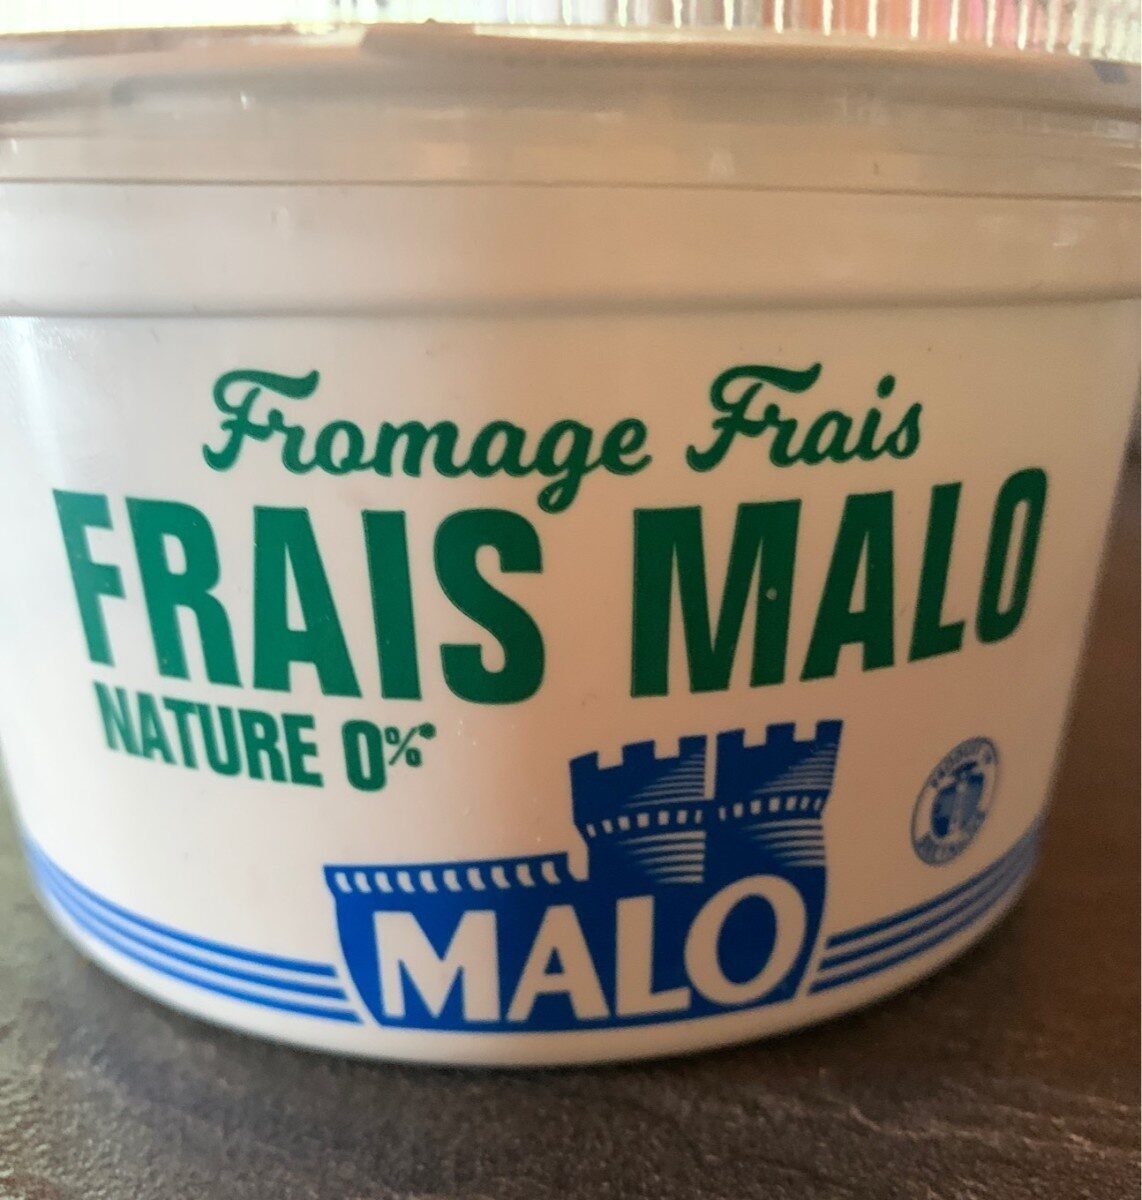 Frais Malo Nature 0% - Nutrition facts - fr